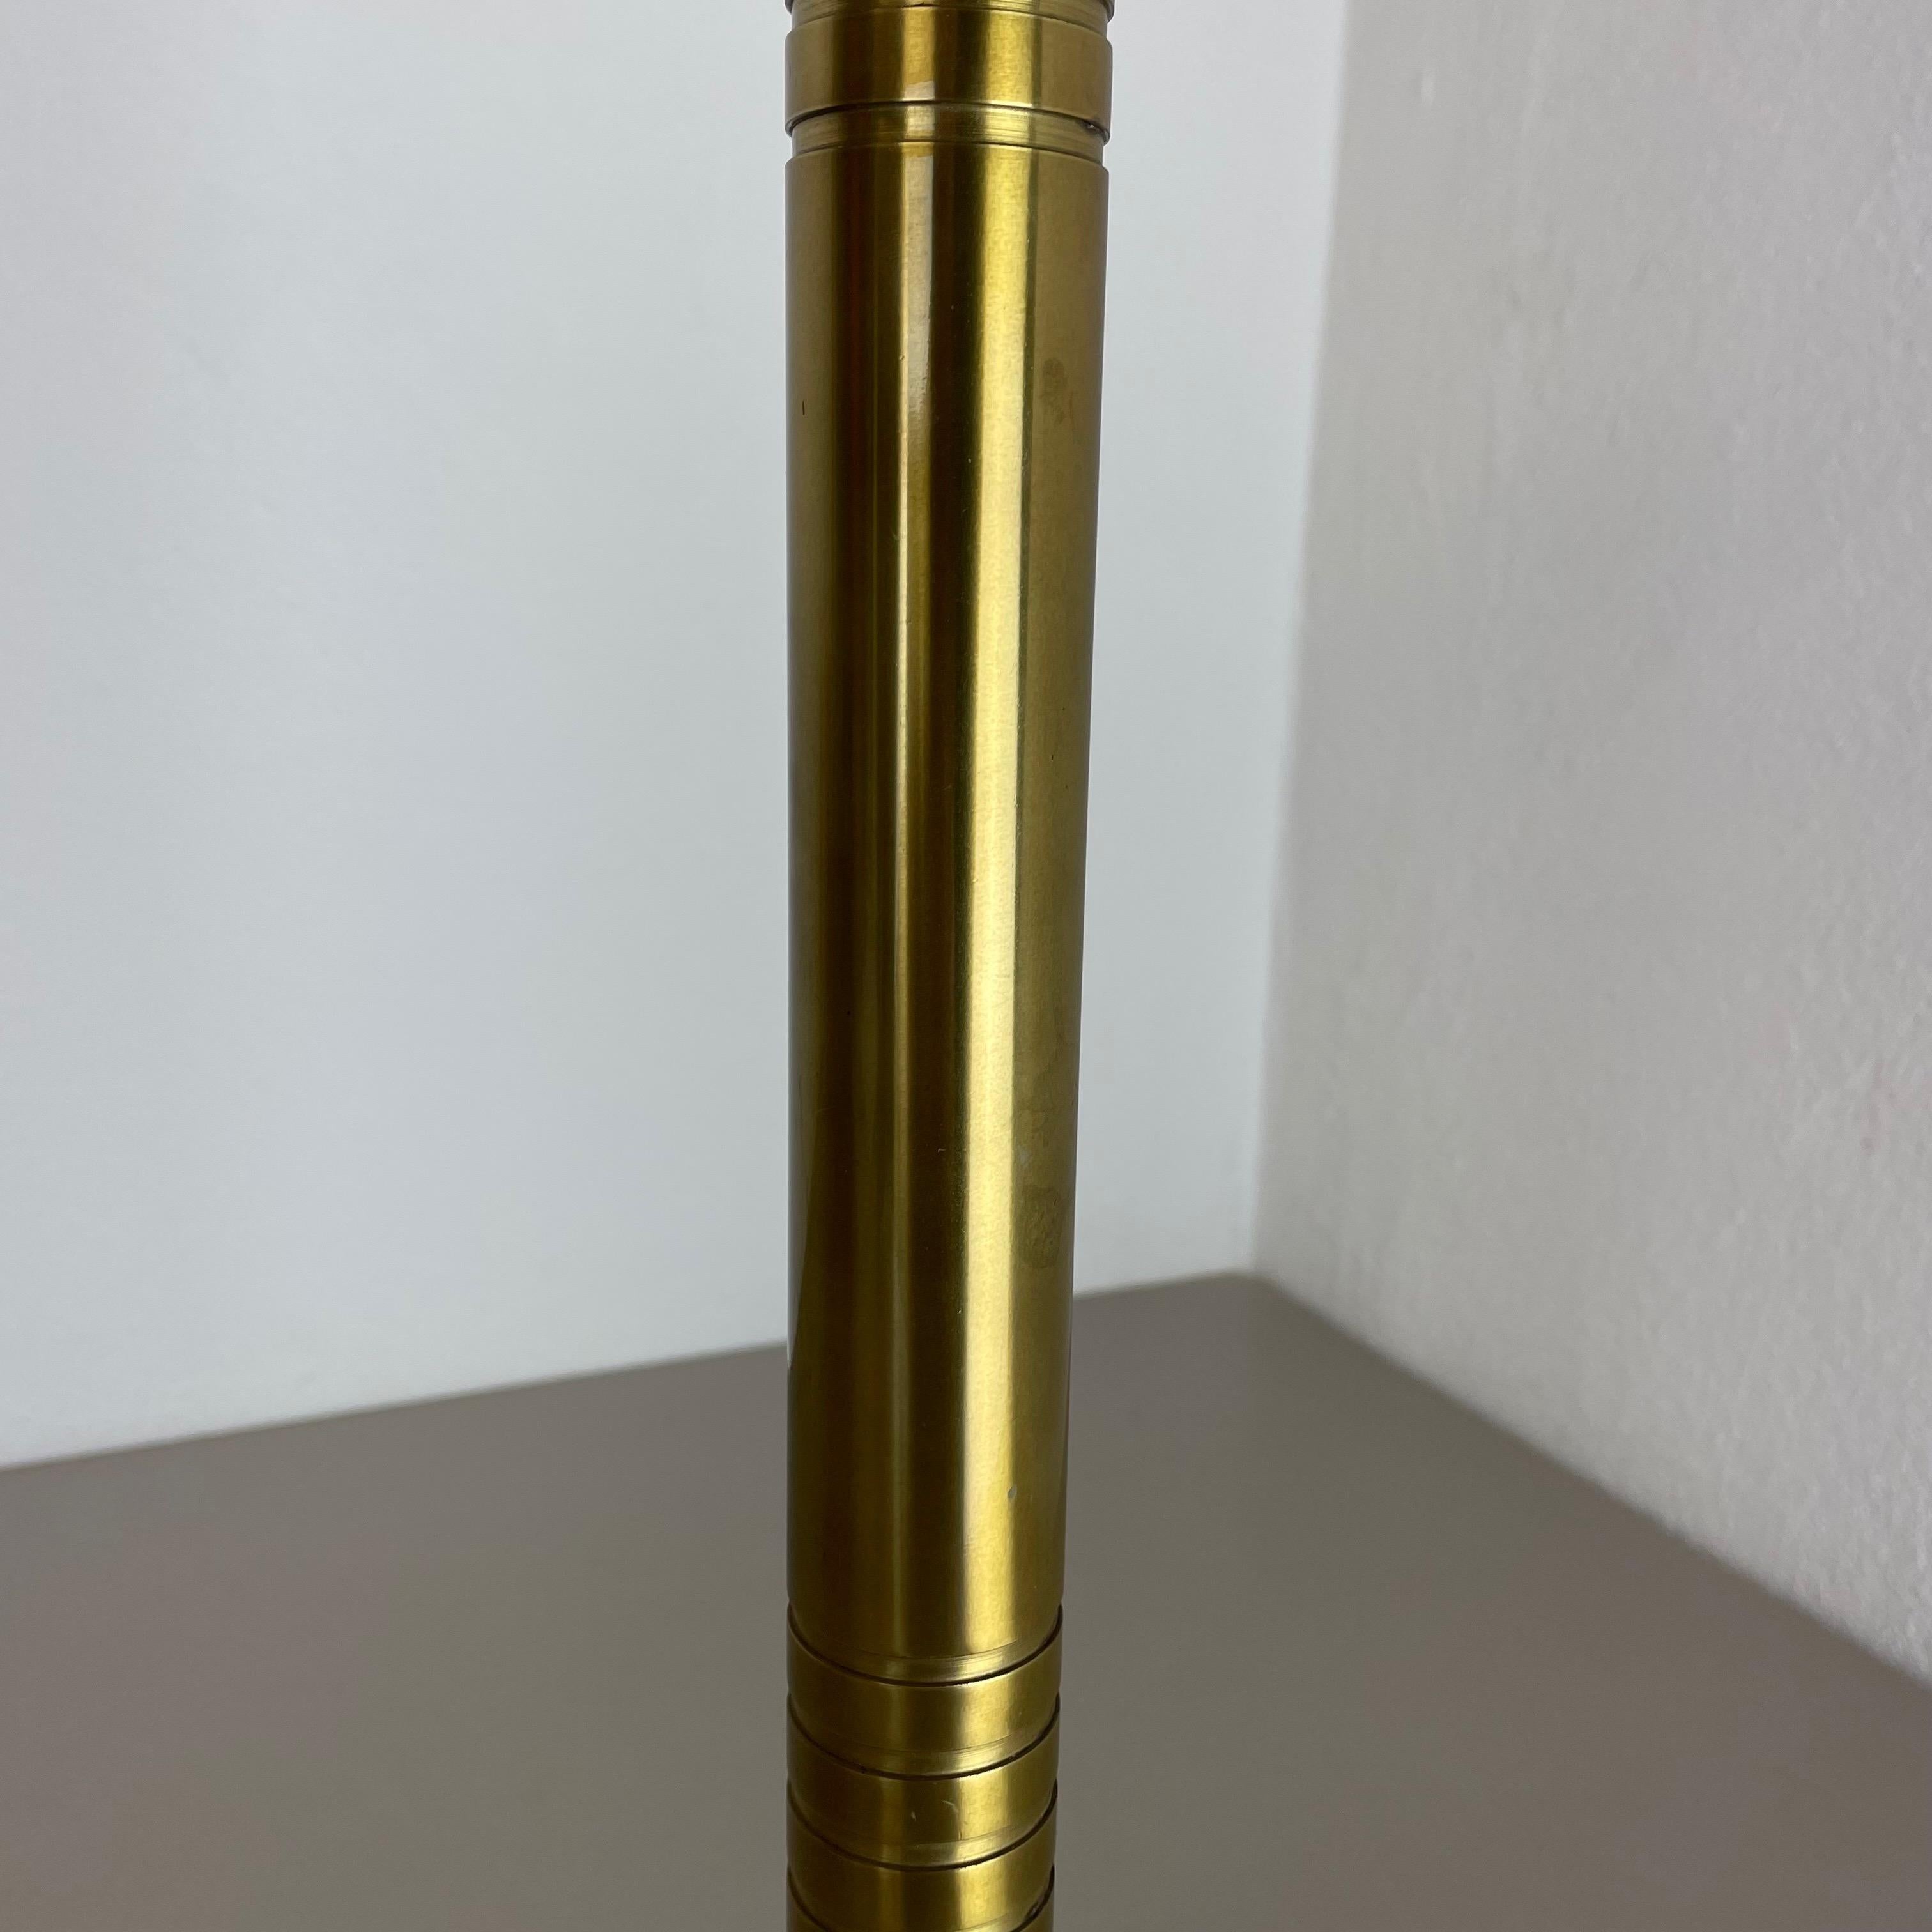 XL 3, 8kg Modernist Sculptural Brutalist Brass Floor Candleholder, Italy, 1950s For Sale 3